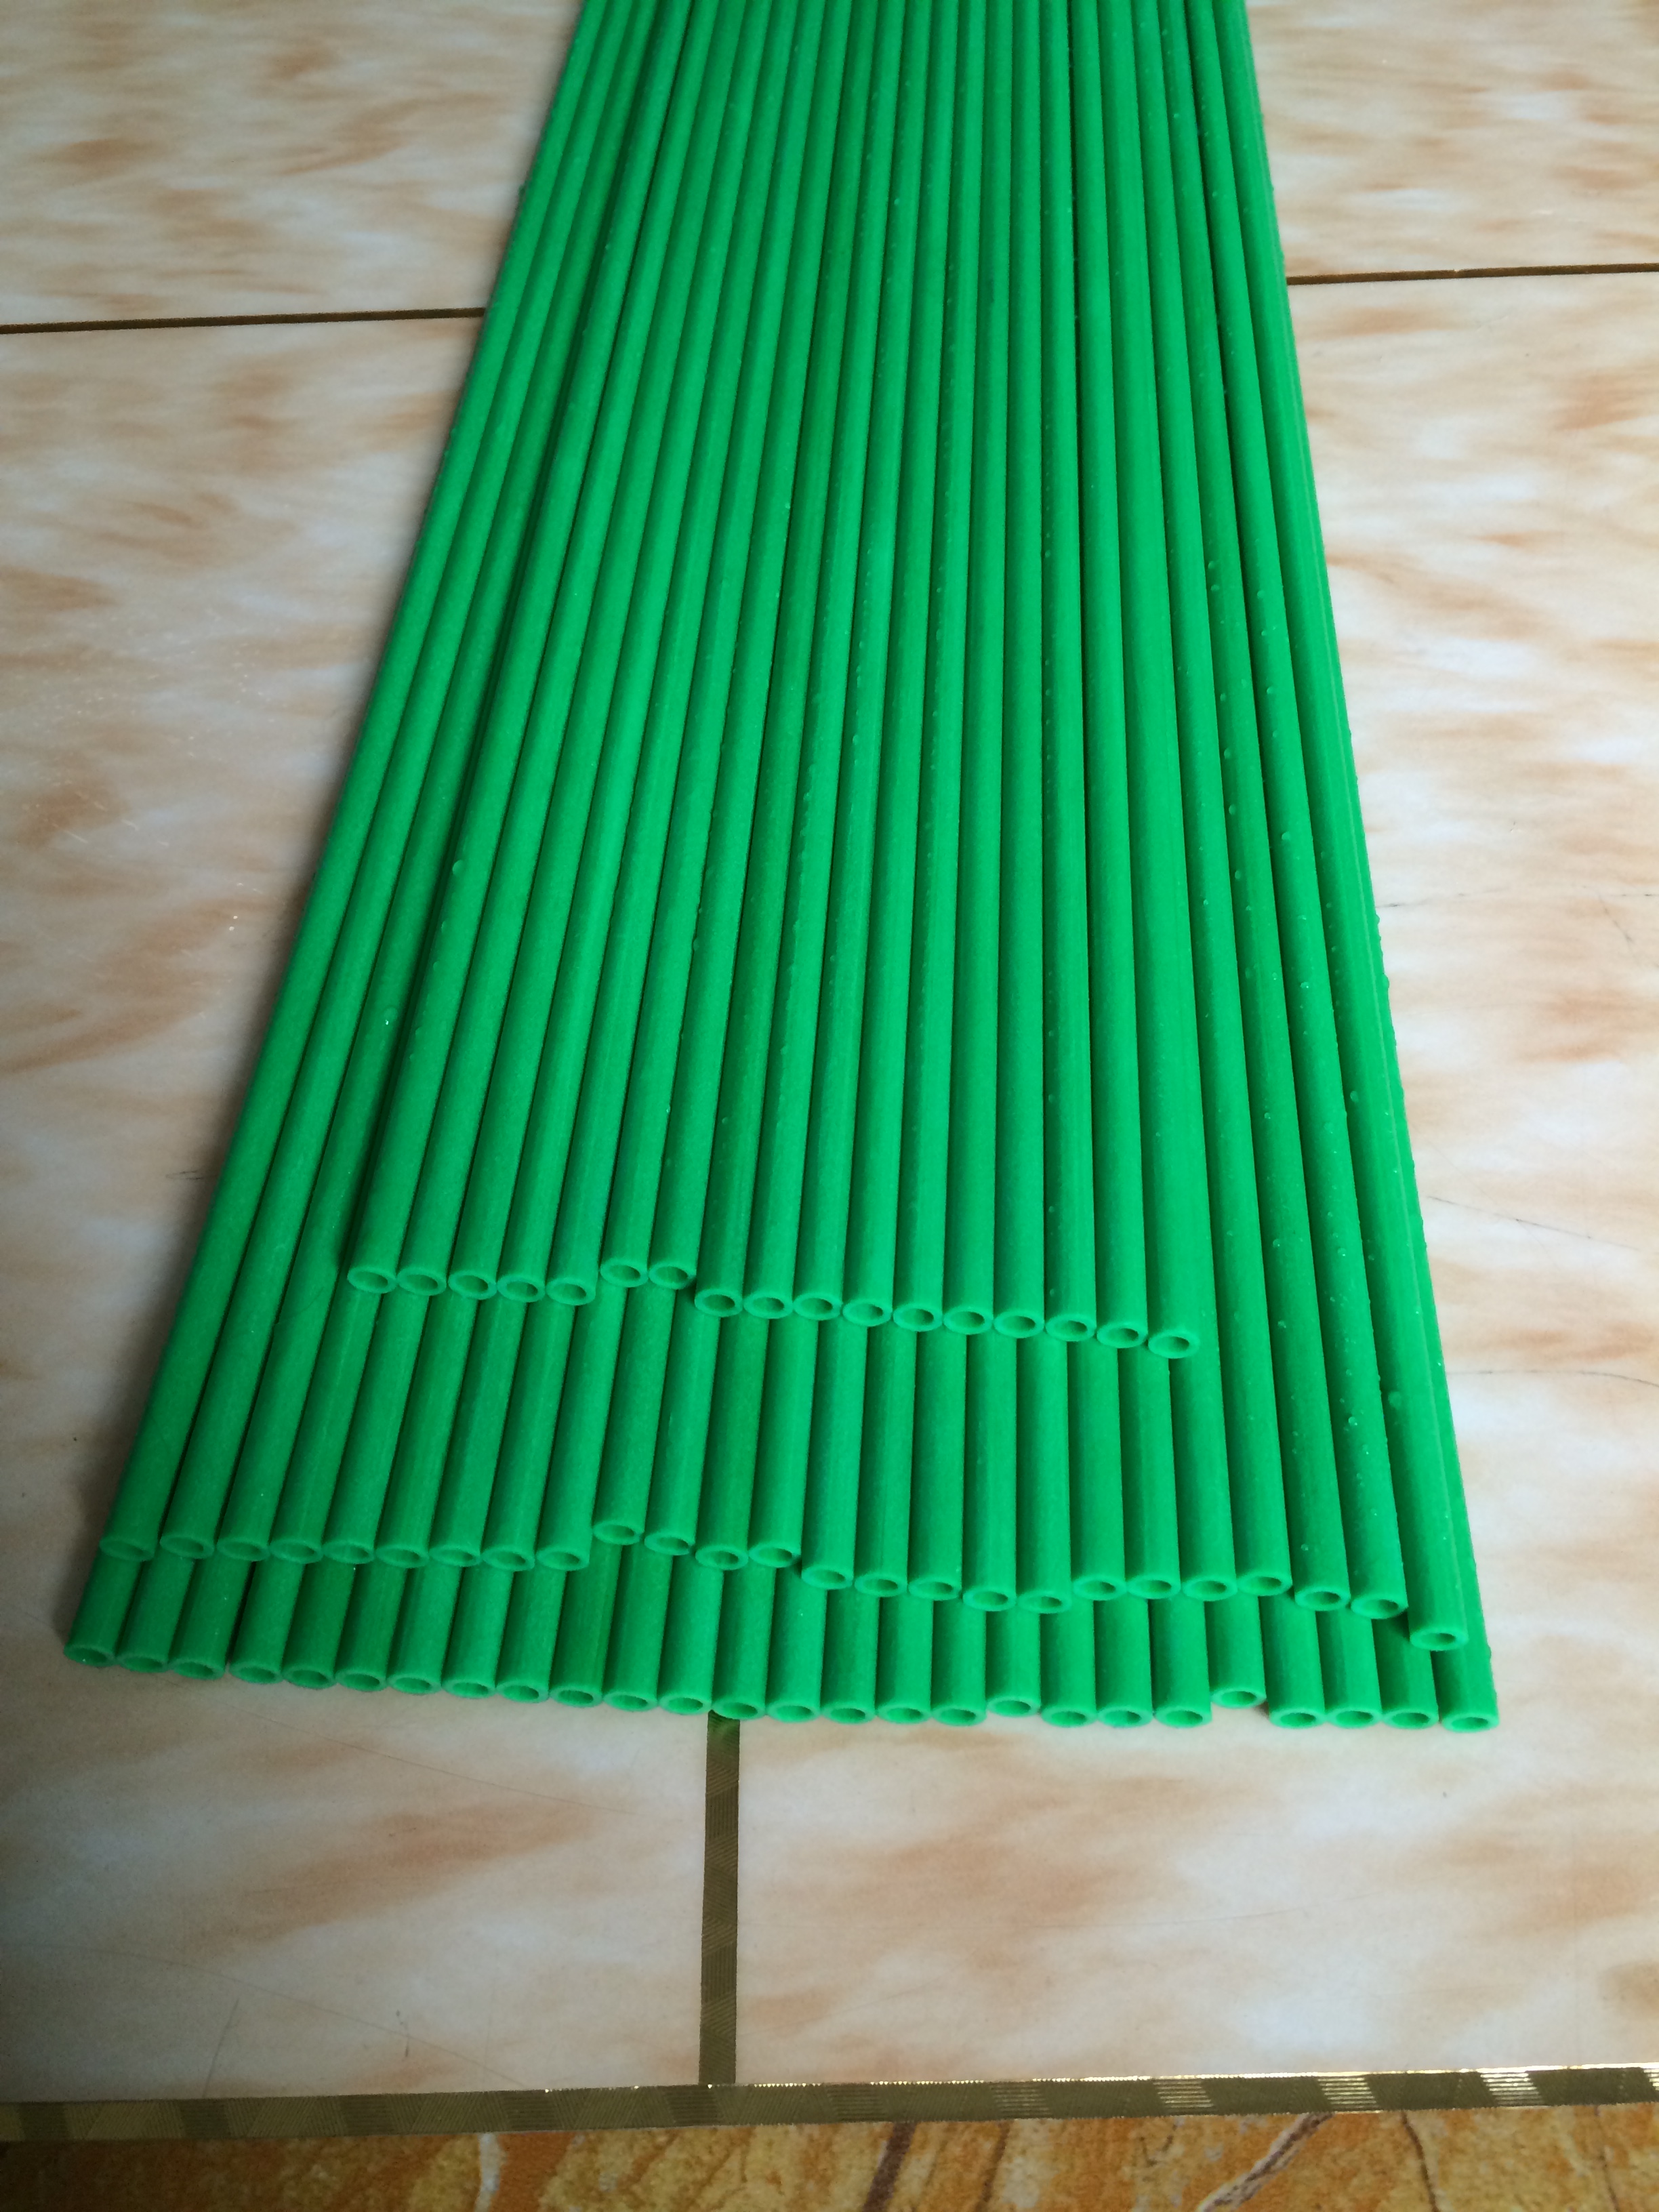 东莞祥合厂家供应优质玻璃纤维管6*4mm绿色 价格优惠 规格齐全颜色多样 玻璃纤维管6*4mm绿色彩色圆管图片